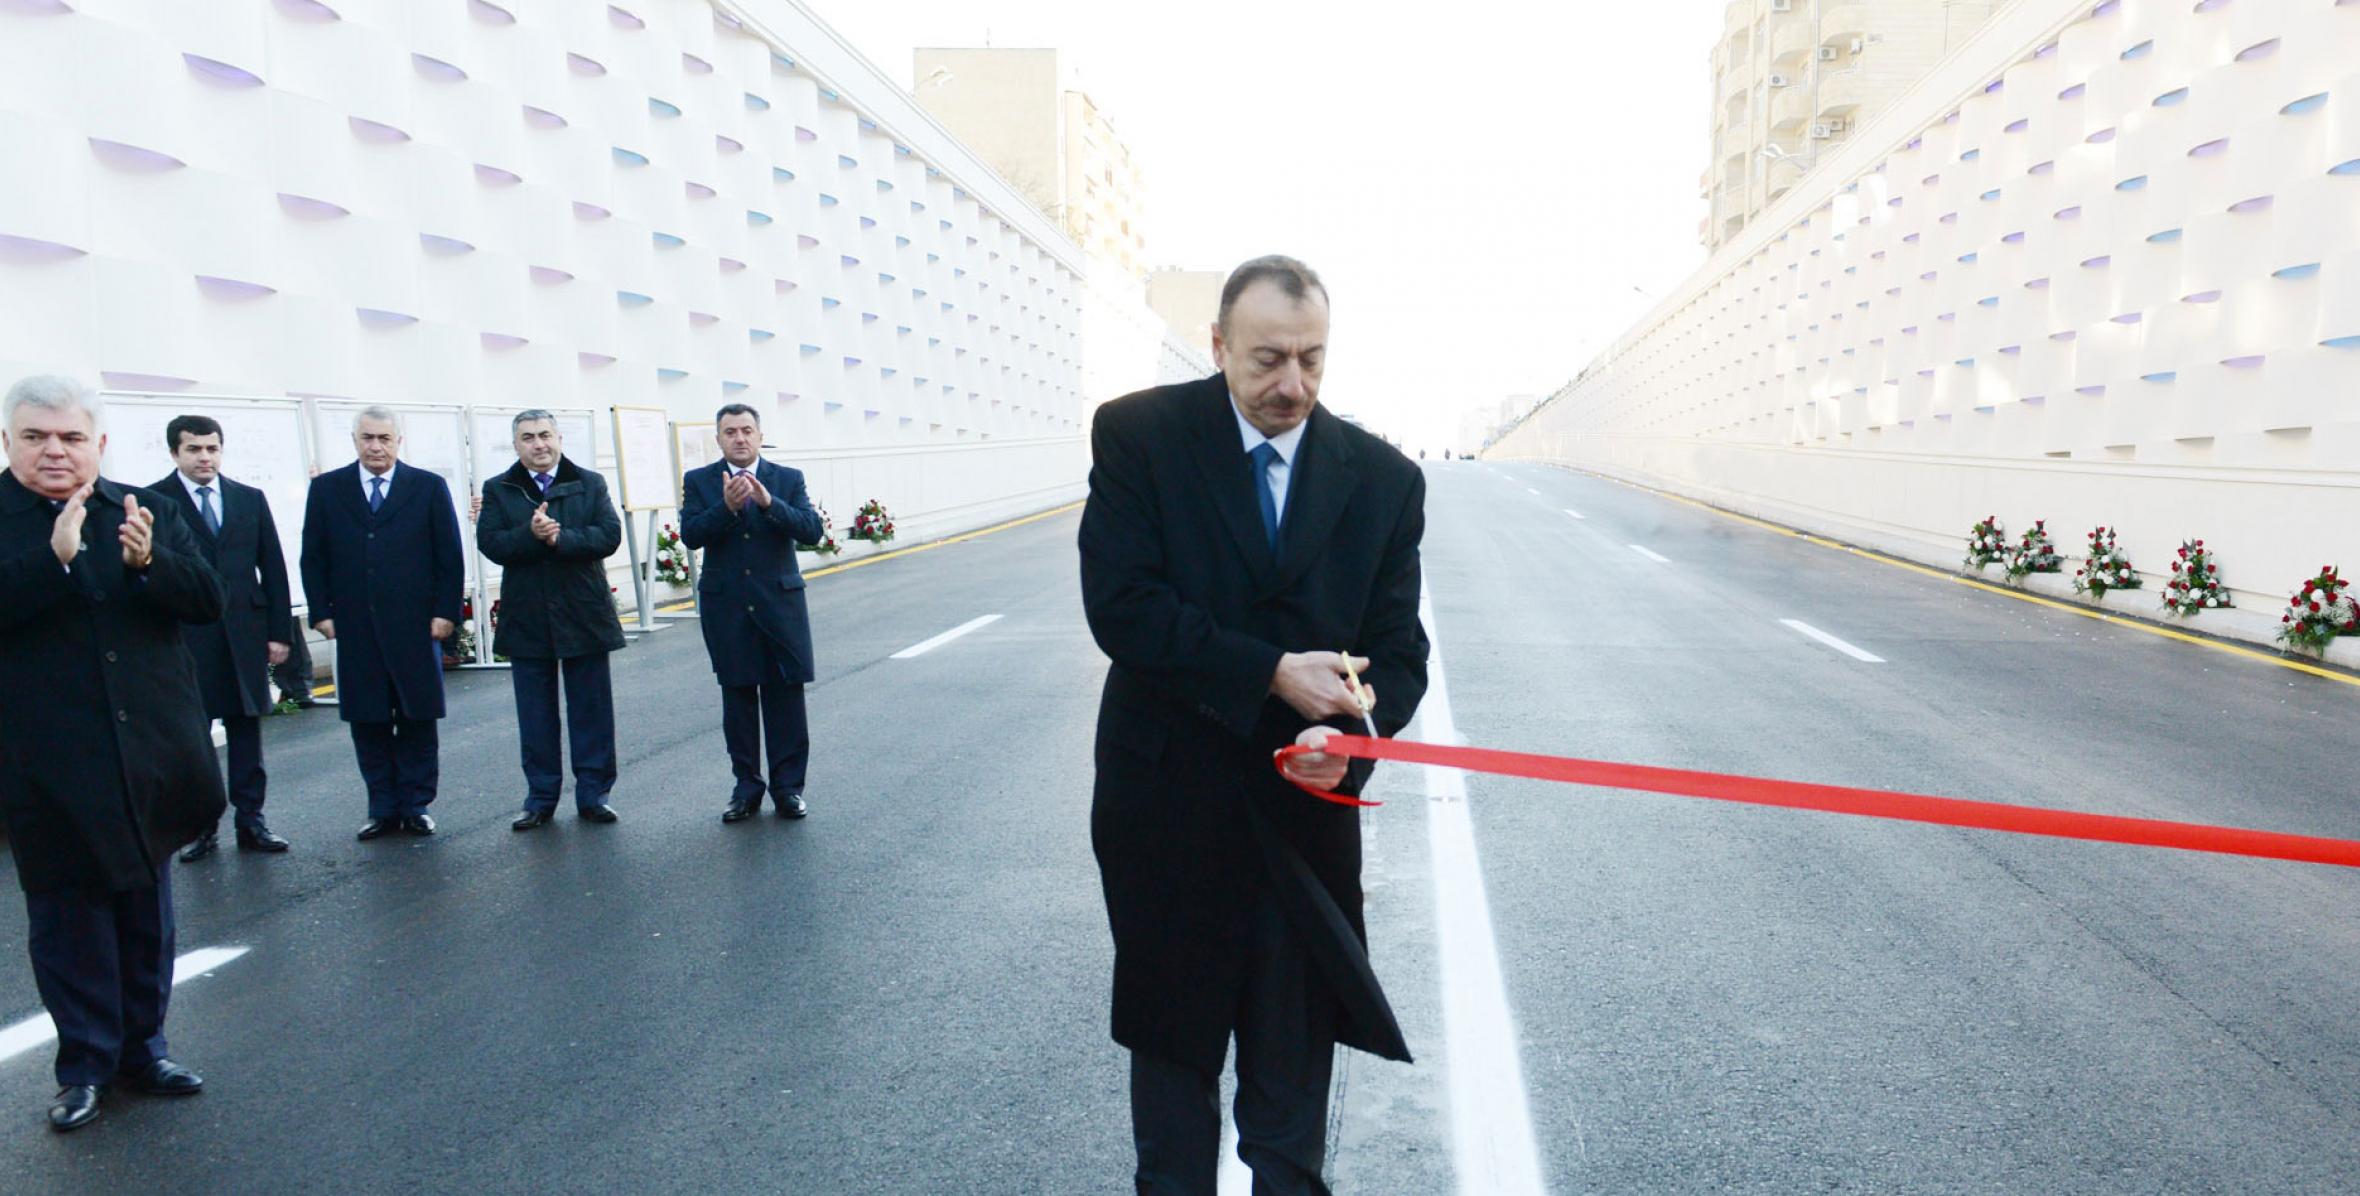 Ильхам Алиев принял участие в церемонии открытия подземного автомобильного туннеля на пересечении проспектов Гасана Алиева и Ататюрка в Баку